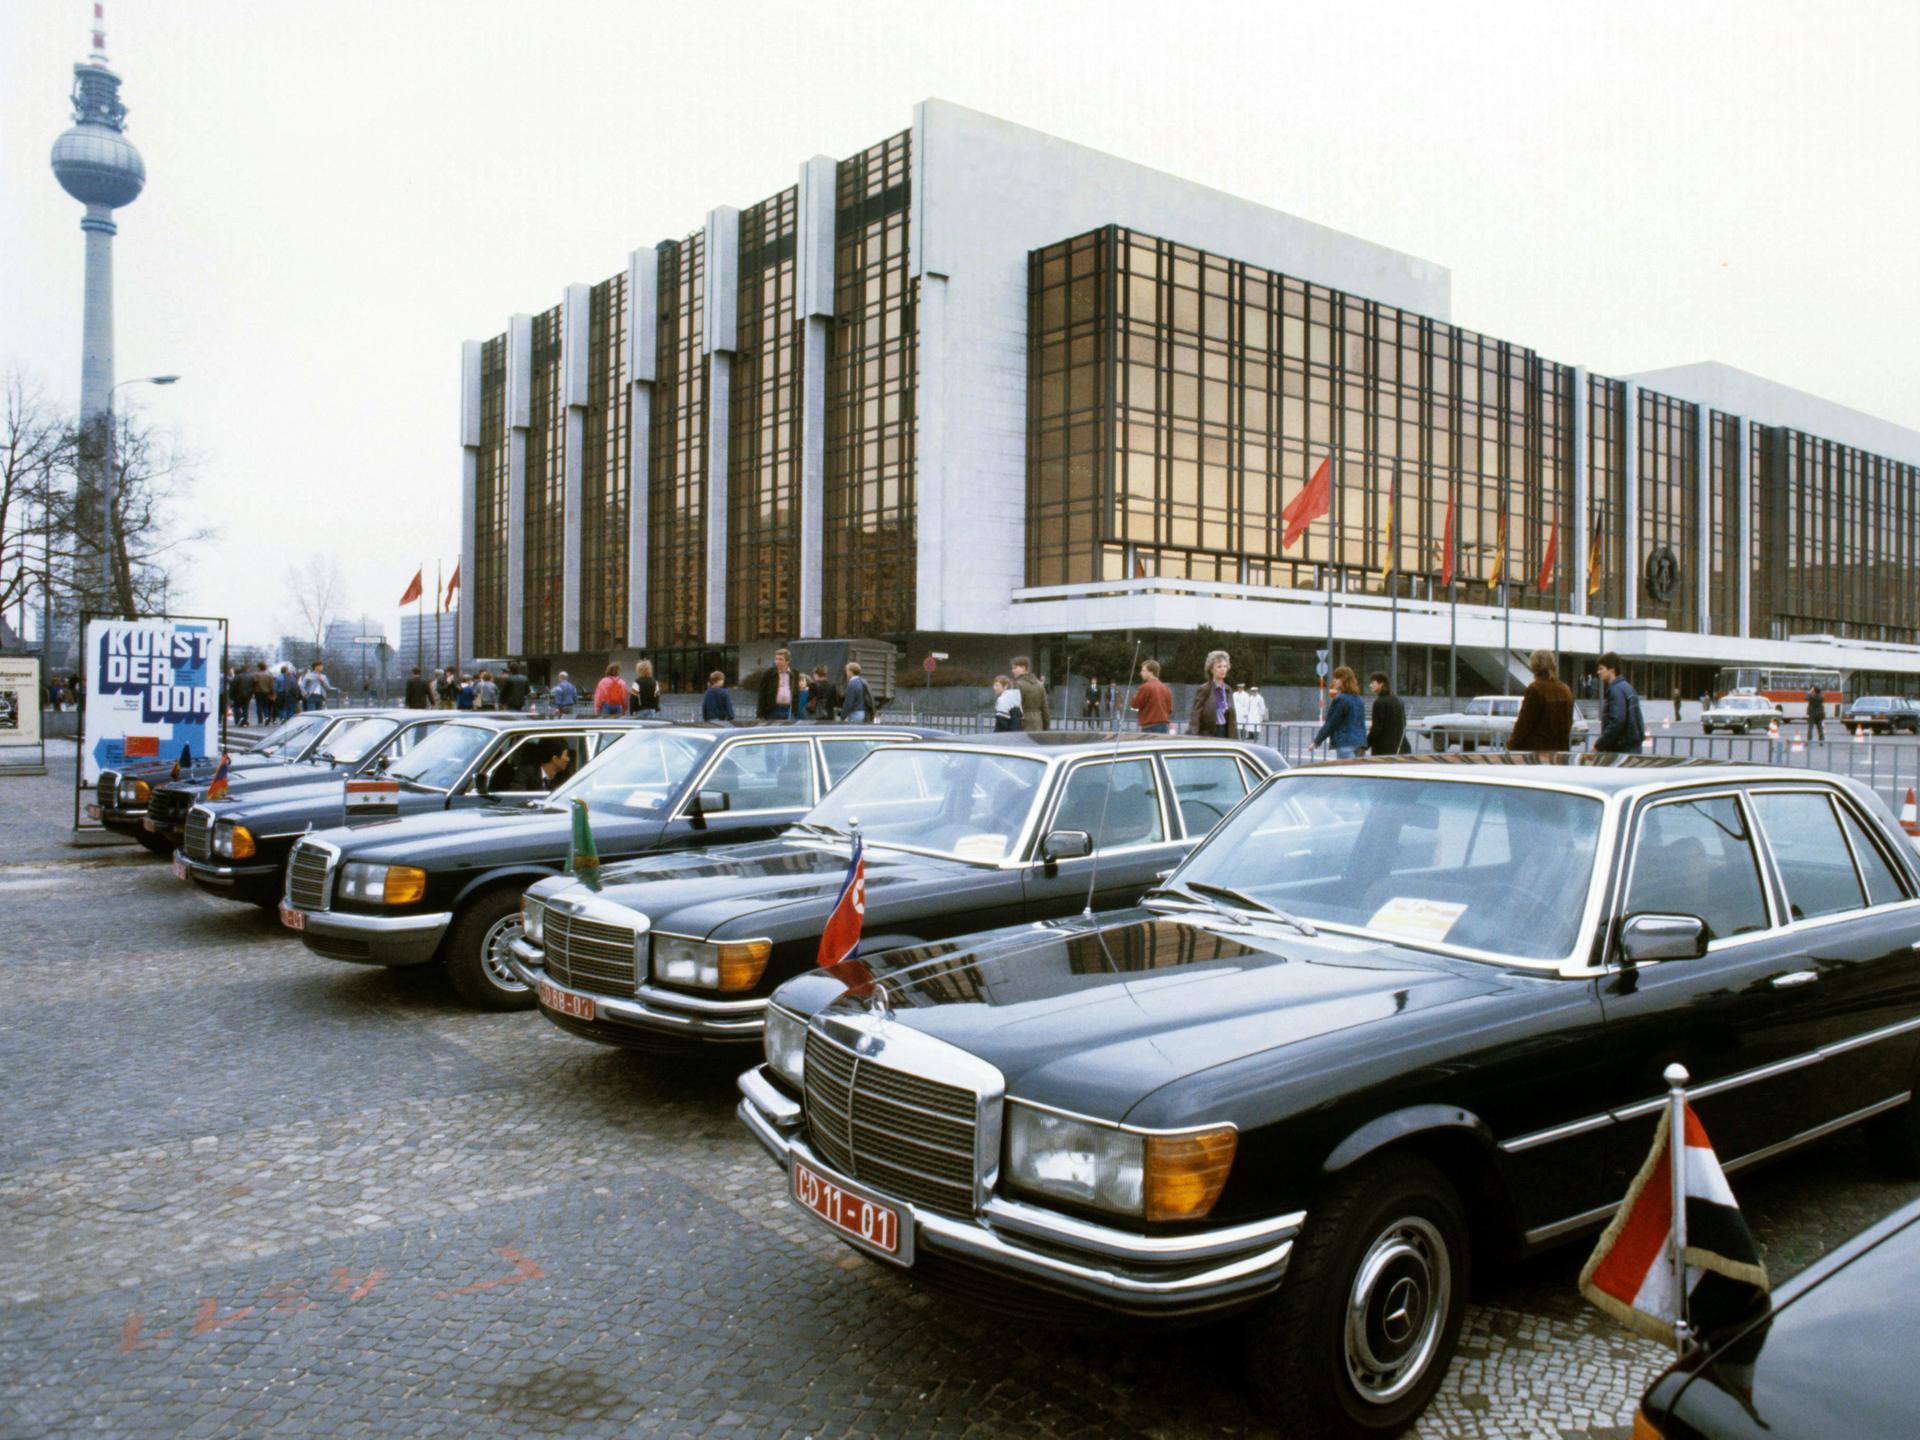 Vor dem Palast der Republik in Berlin parken im April 1986 zahlreiche Diplomatenfahrzeuge vom Typ Mercedes-Benz.